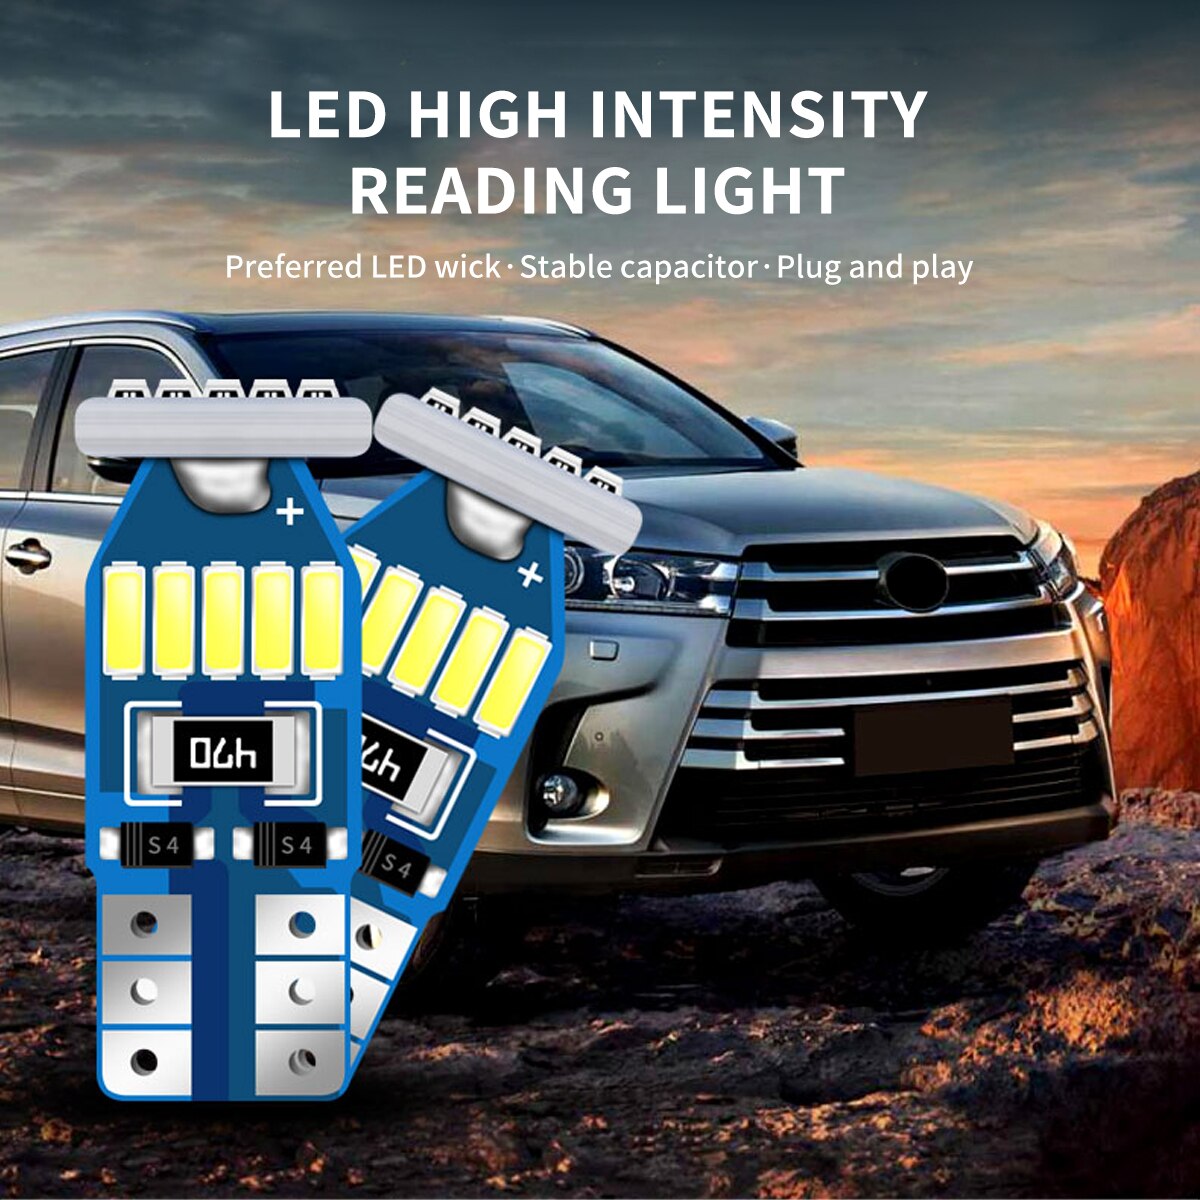 Lampe-de-lecture-LED-pour-voiture-Toyota-9-pi-ces-clairage-d-int-rieur-lampe-d